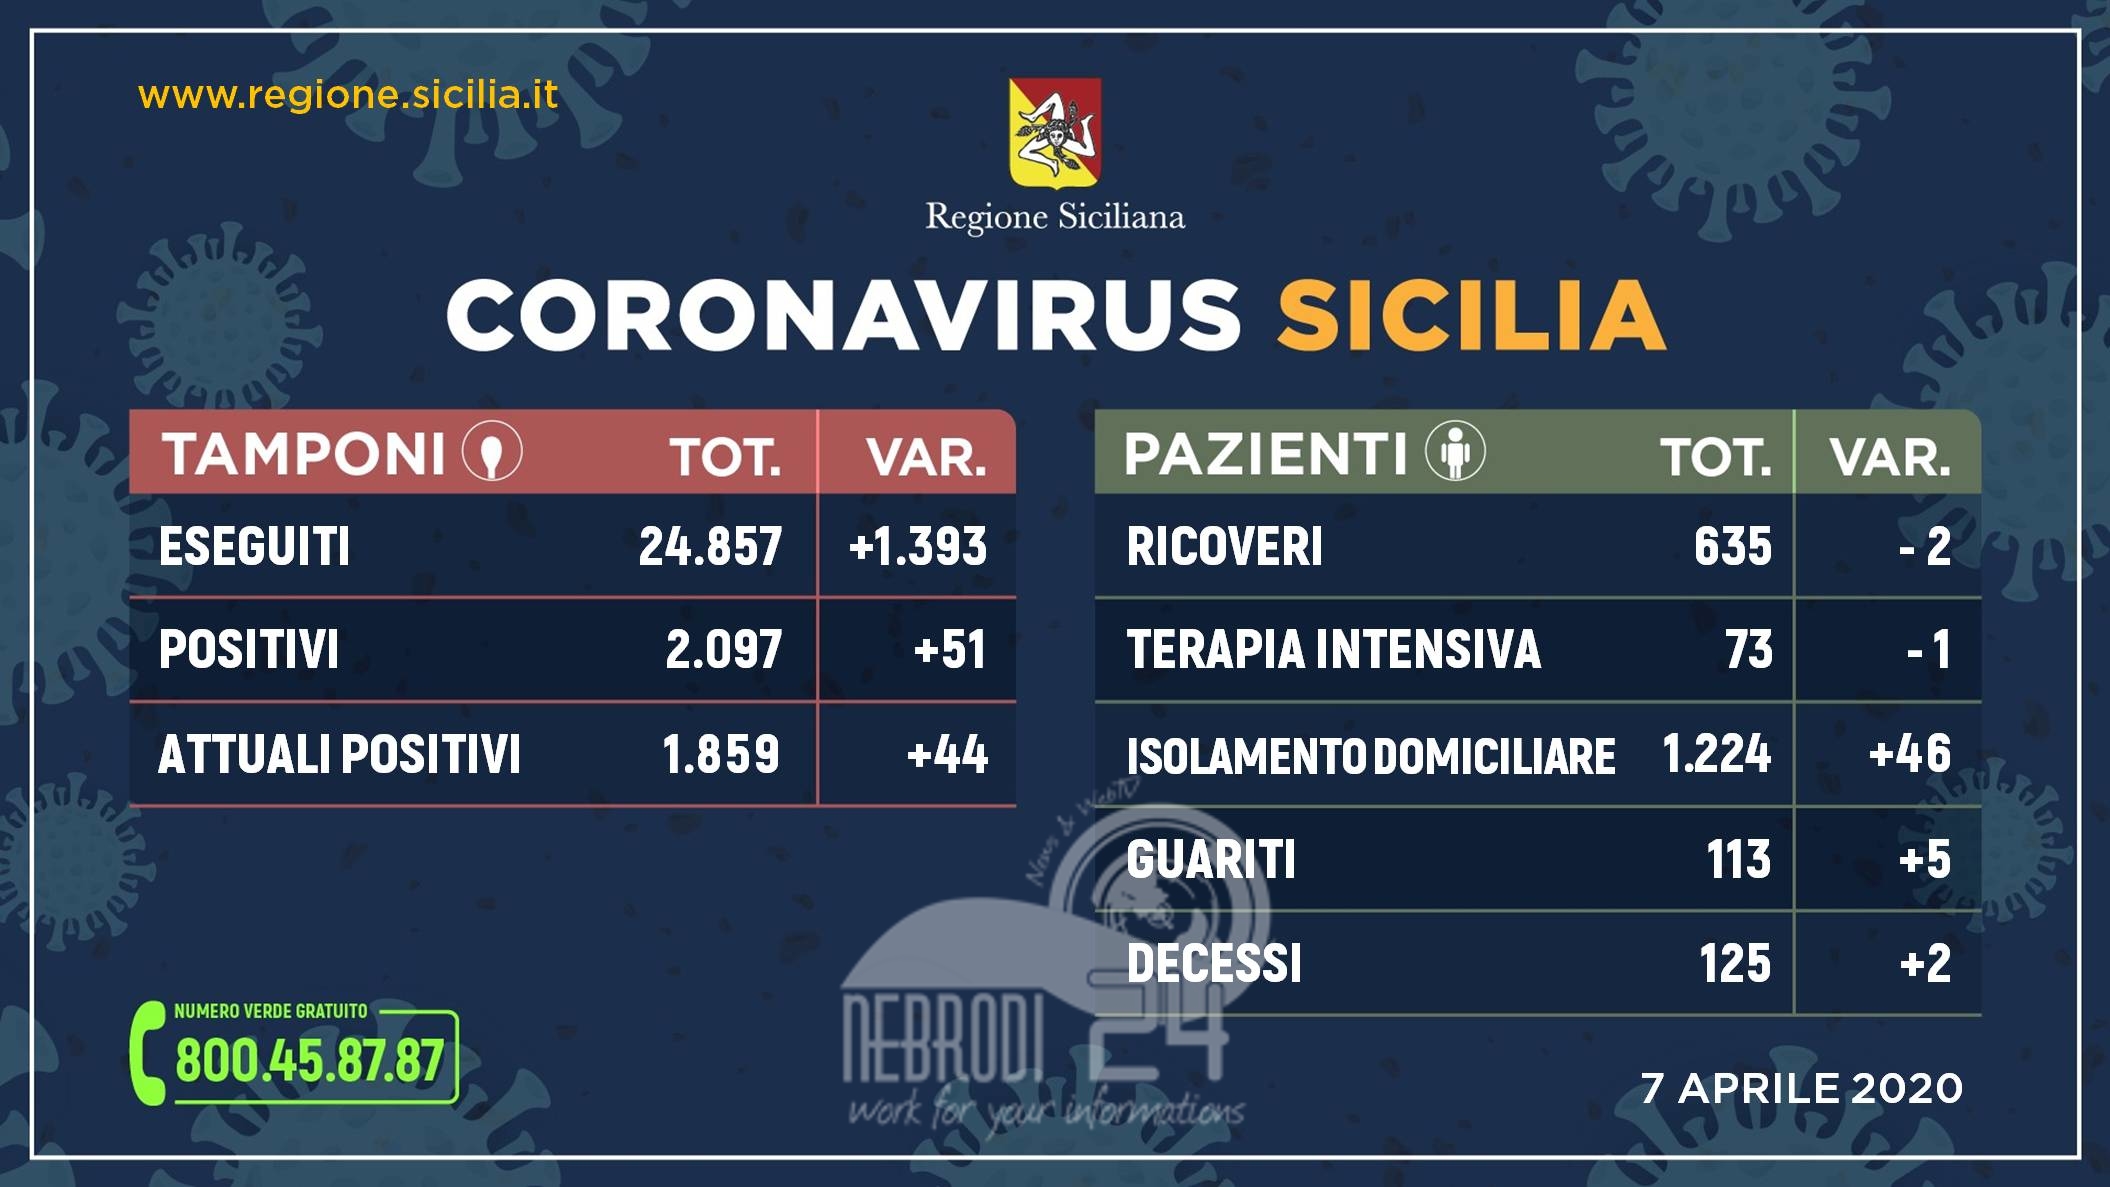 Coronavirus: l’aggiornamento in Sicilia, 1.859 positivi e 113 guariti (+44 rispetto ad ieri)